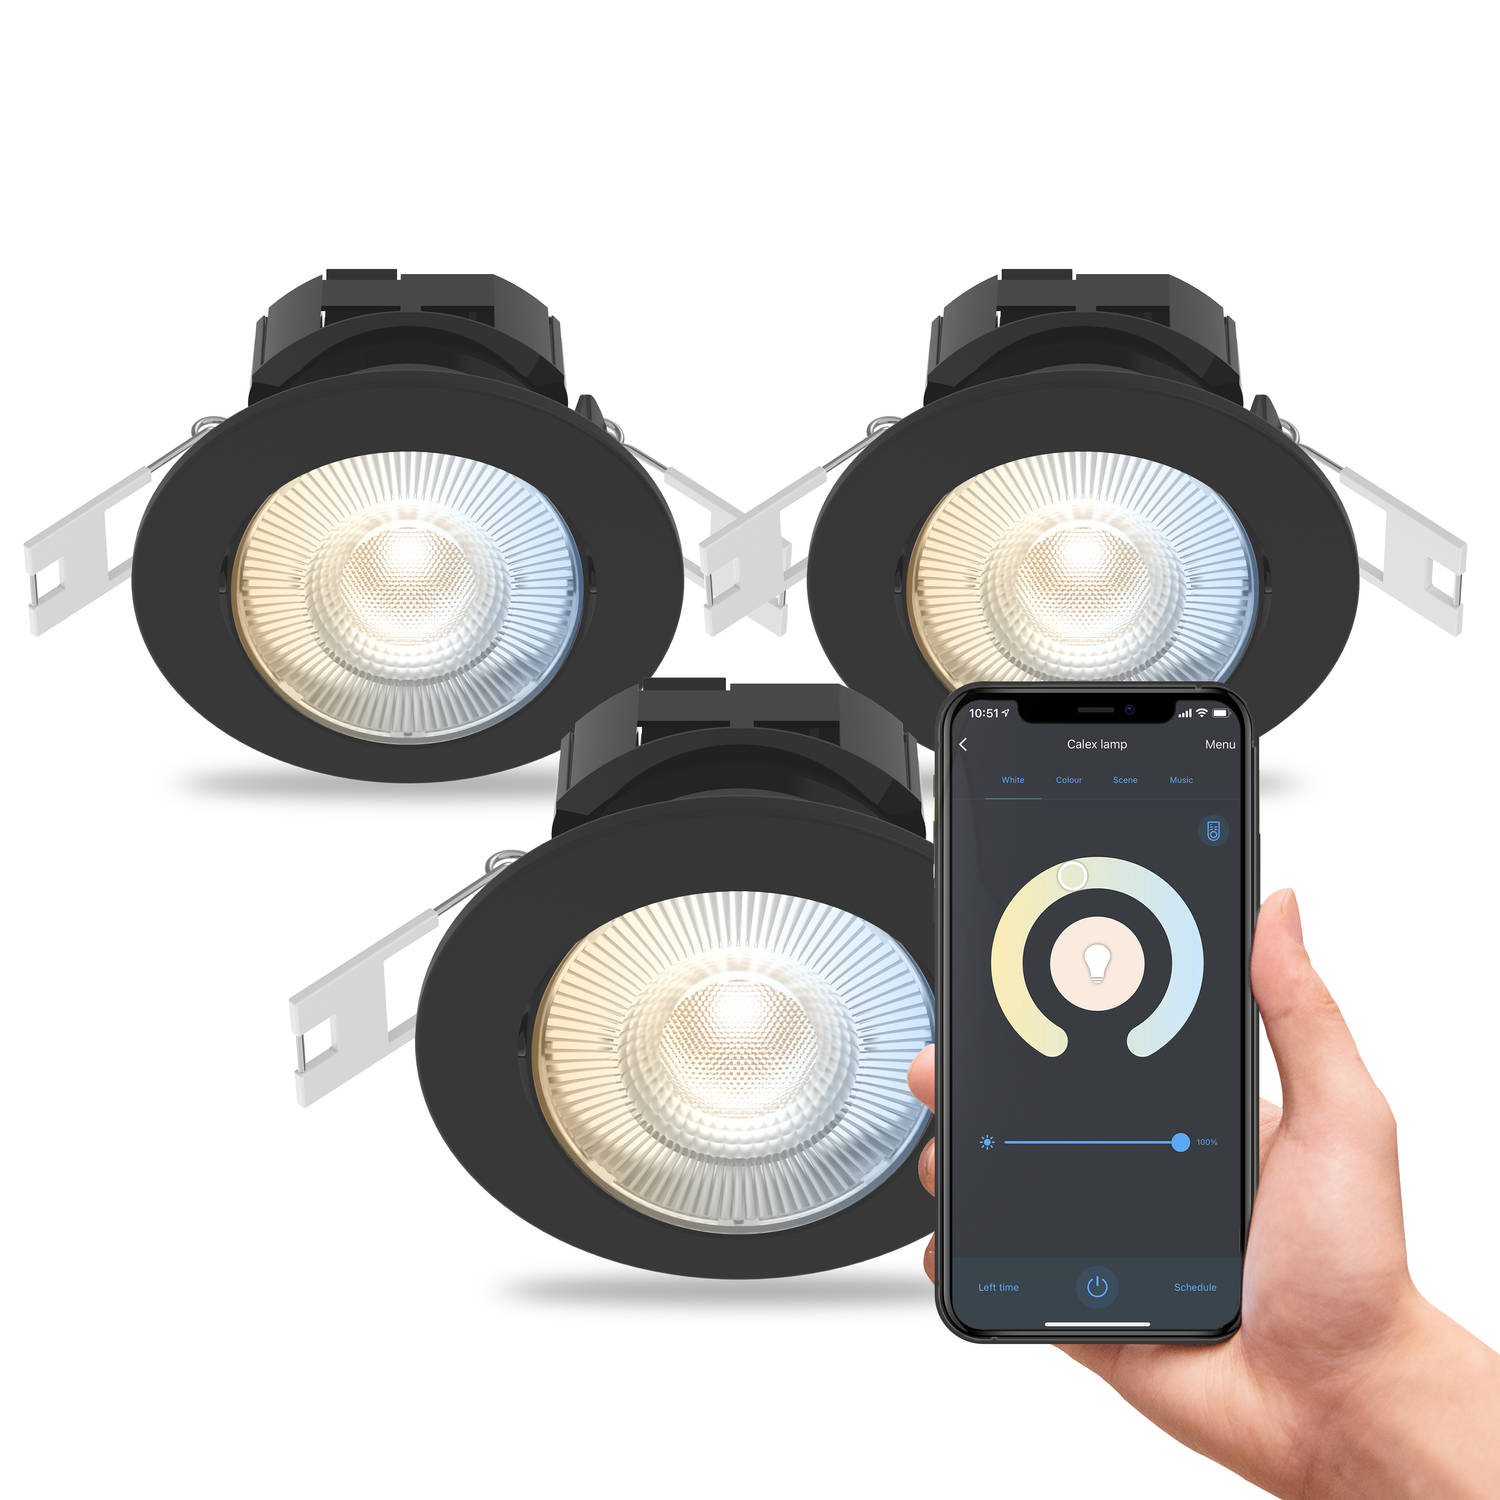 Calex Slimme Inbouwspot - Set van 3 stuks - Smart LED Downlight Dimbaar - Kantelbaar - Warm Wit Licht - Zwart